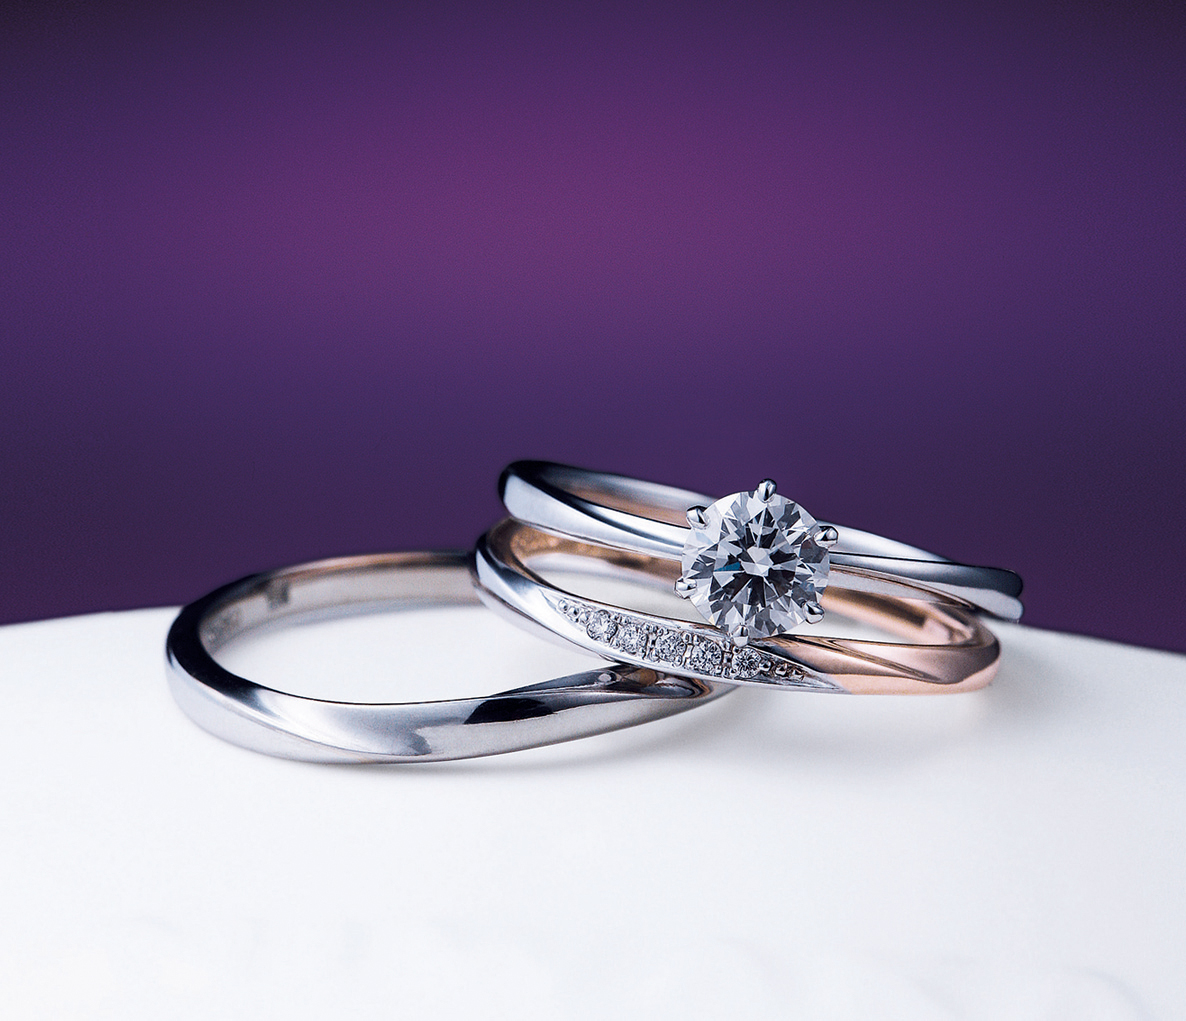 NIWAKAの婚約指輪「花雪」と結婚指輪「雪佳景」